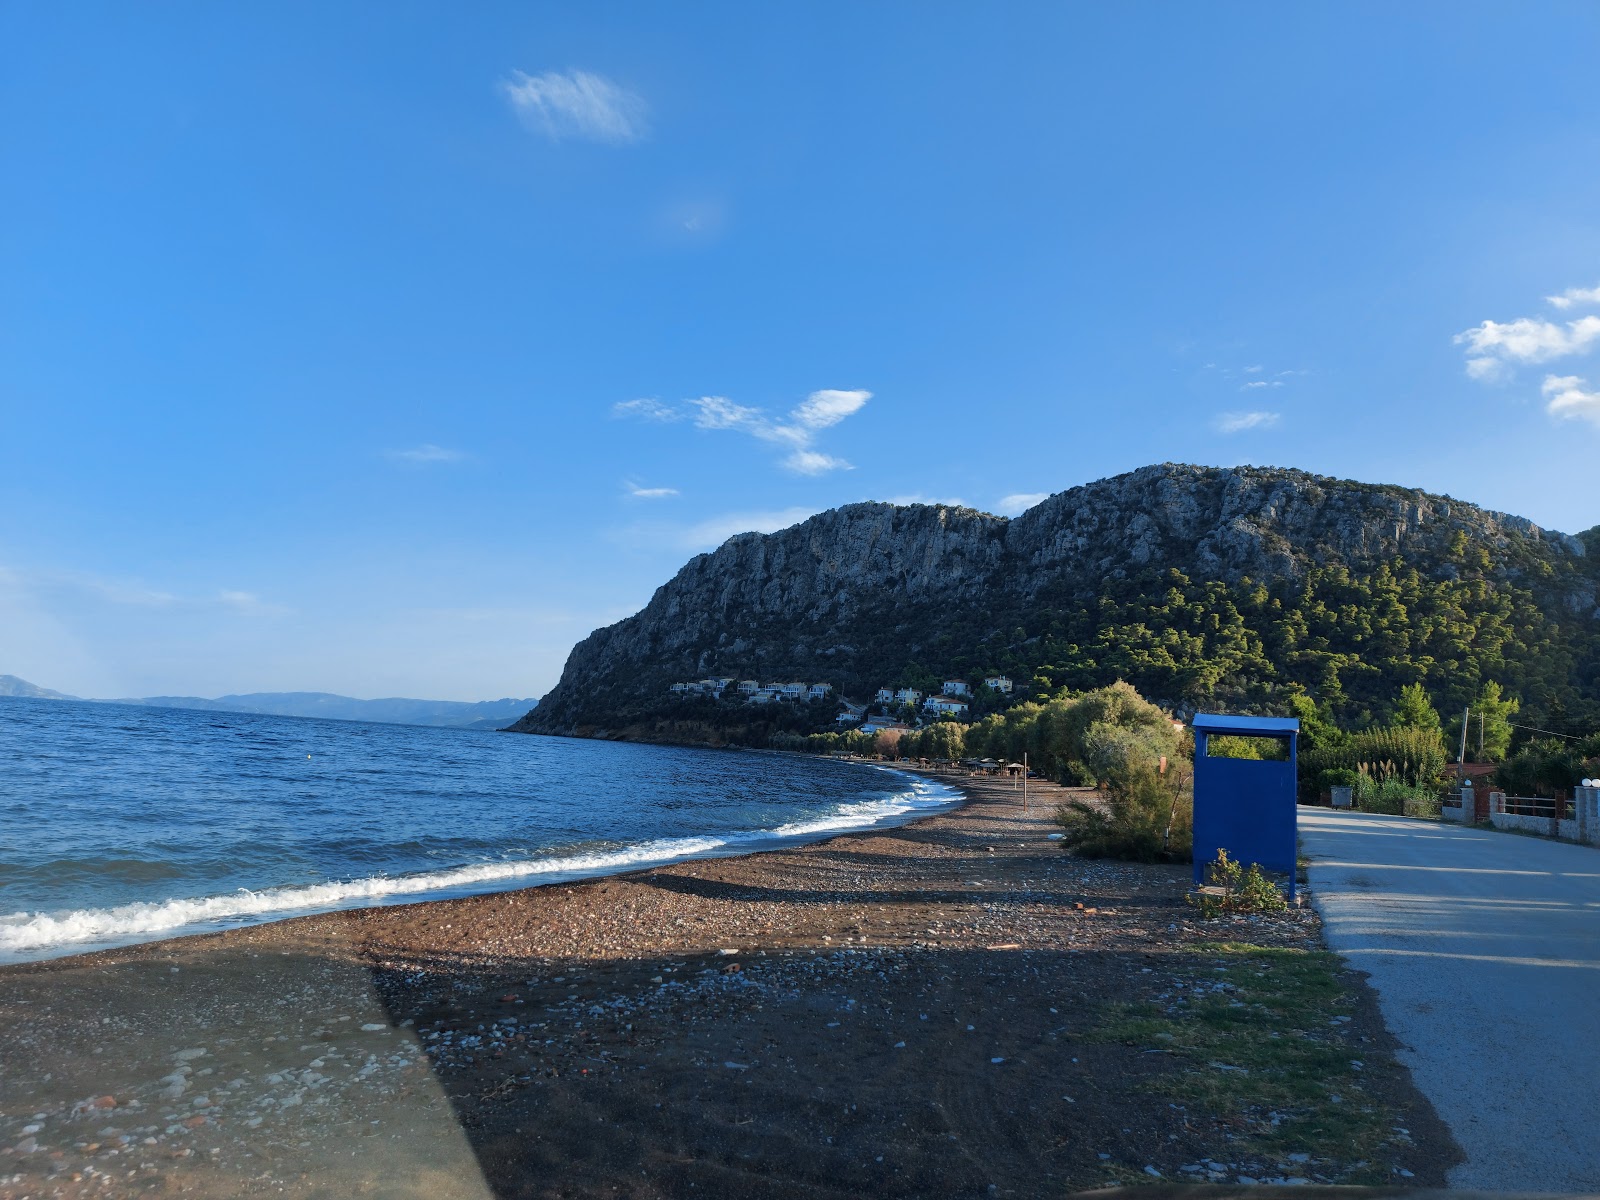 Neas Epidavrou'in fotoğrafı geniş plaj ile birlikte